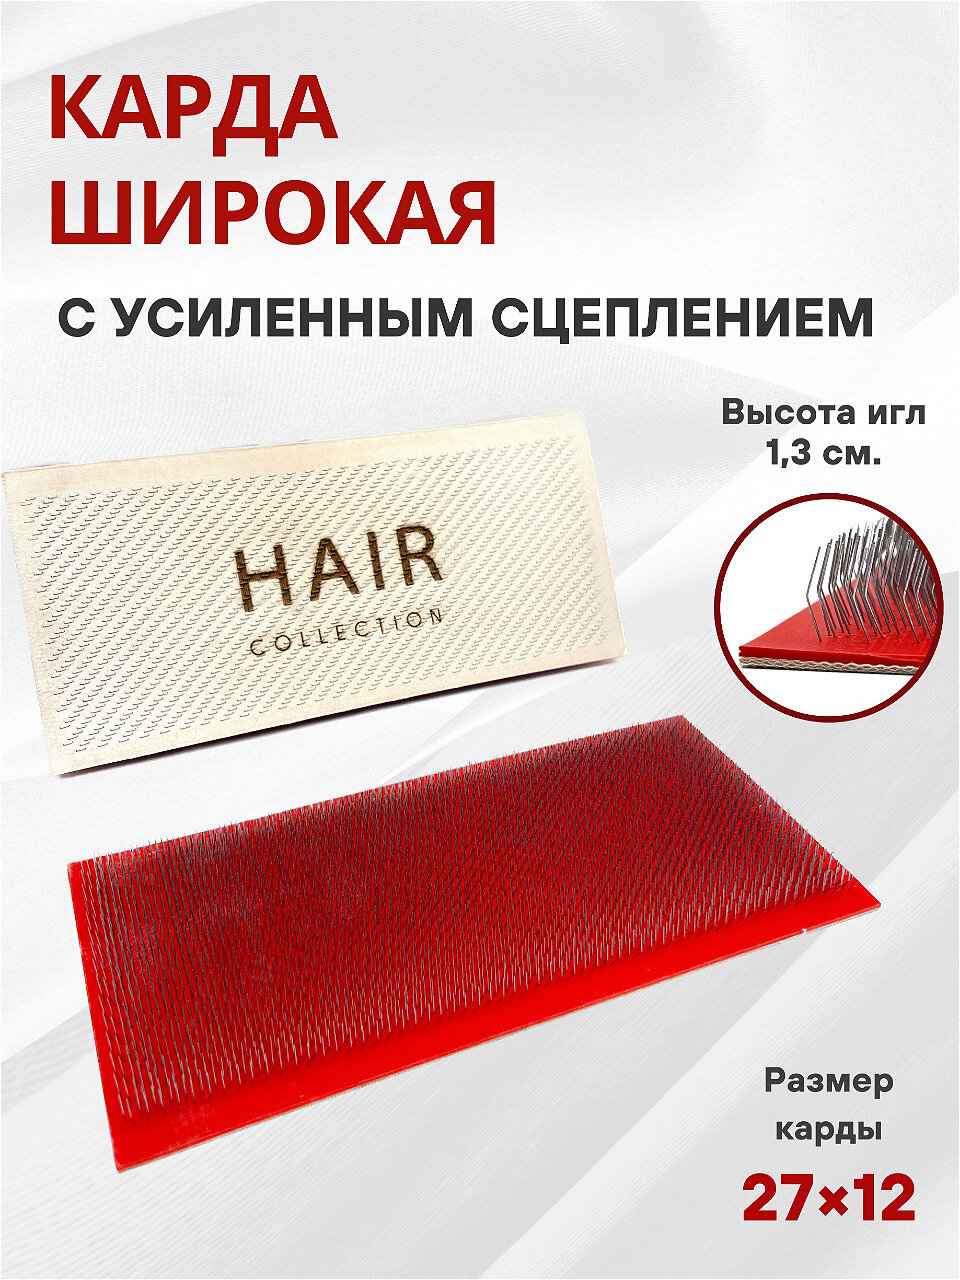 Карда с усиленным сцеплением для капсуляции волос при наращивании большая 27*12 см